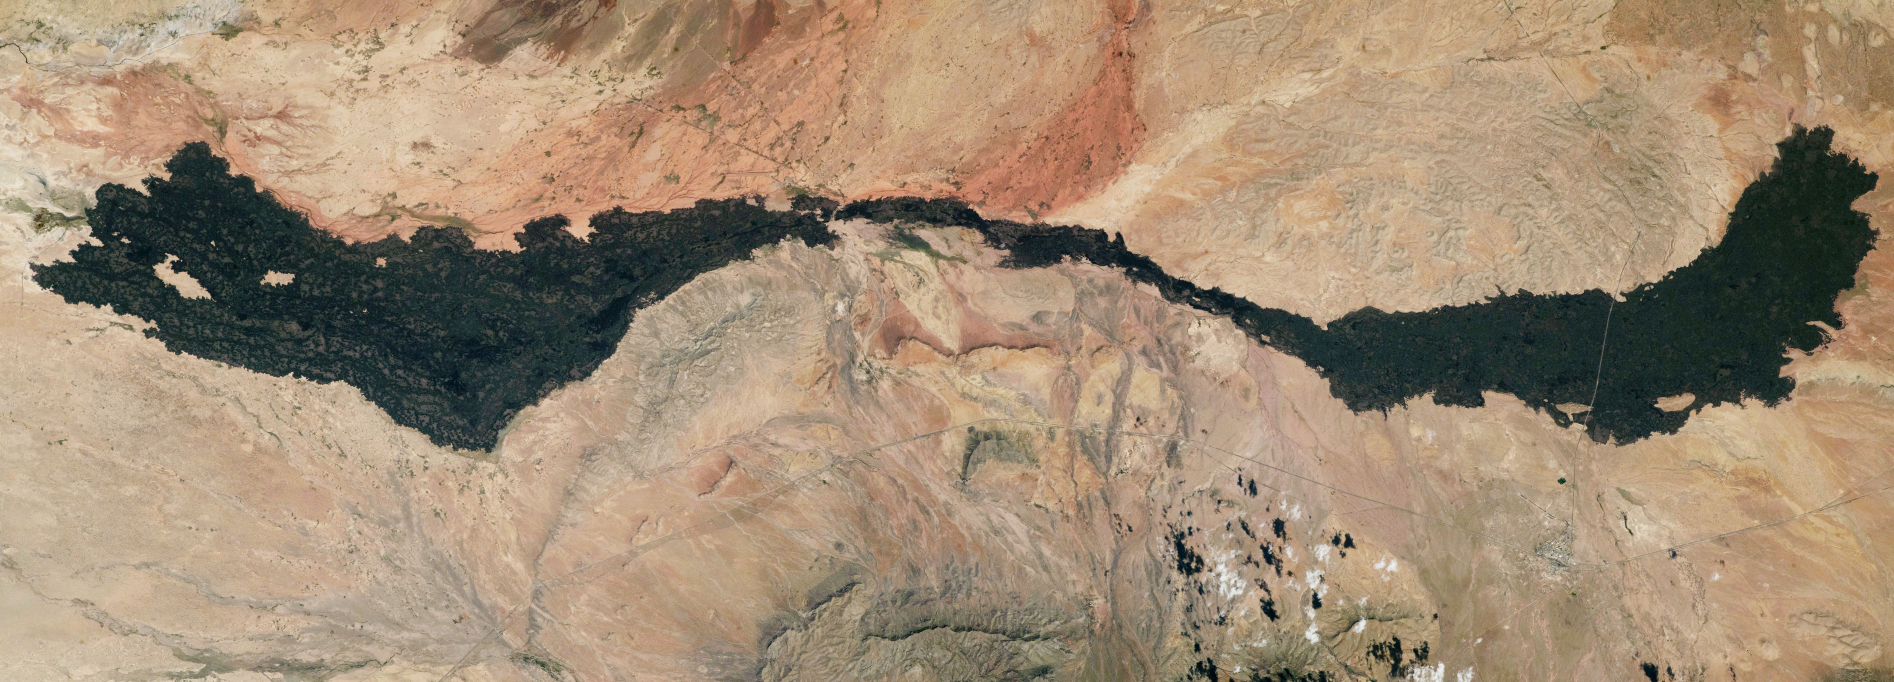 Fotografija toka lave Carrizozo Malpaís u pustinji Chihuahuan, Novi Meksiko, koju je snimio neimenovani astronaut s Međunarodne svemirske stanice 30. lipnja (©NASA Earth Observatory).